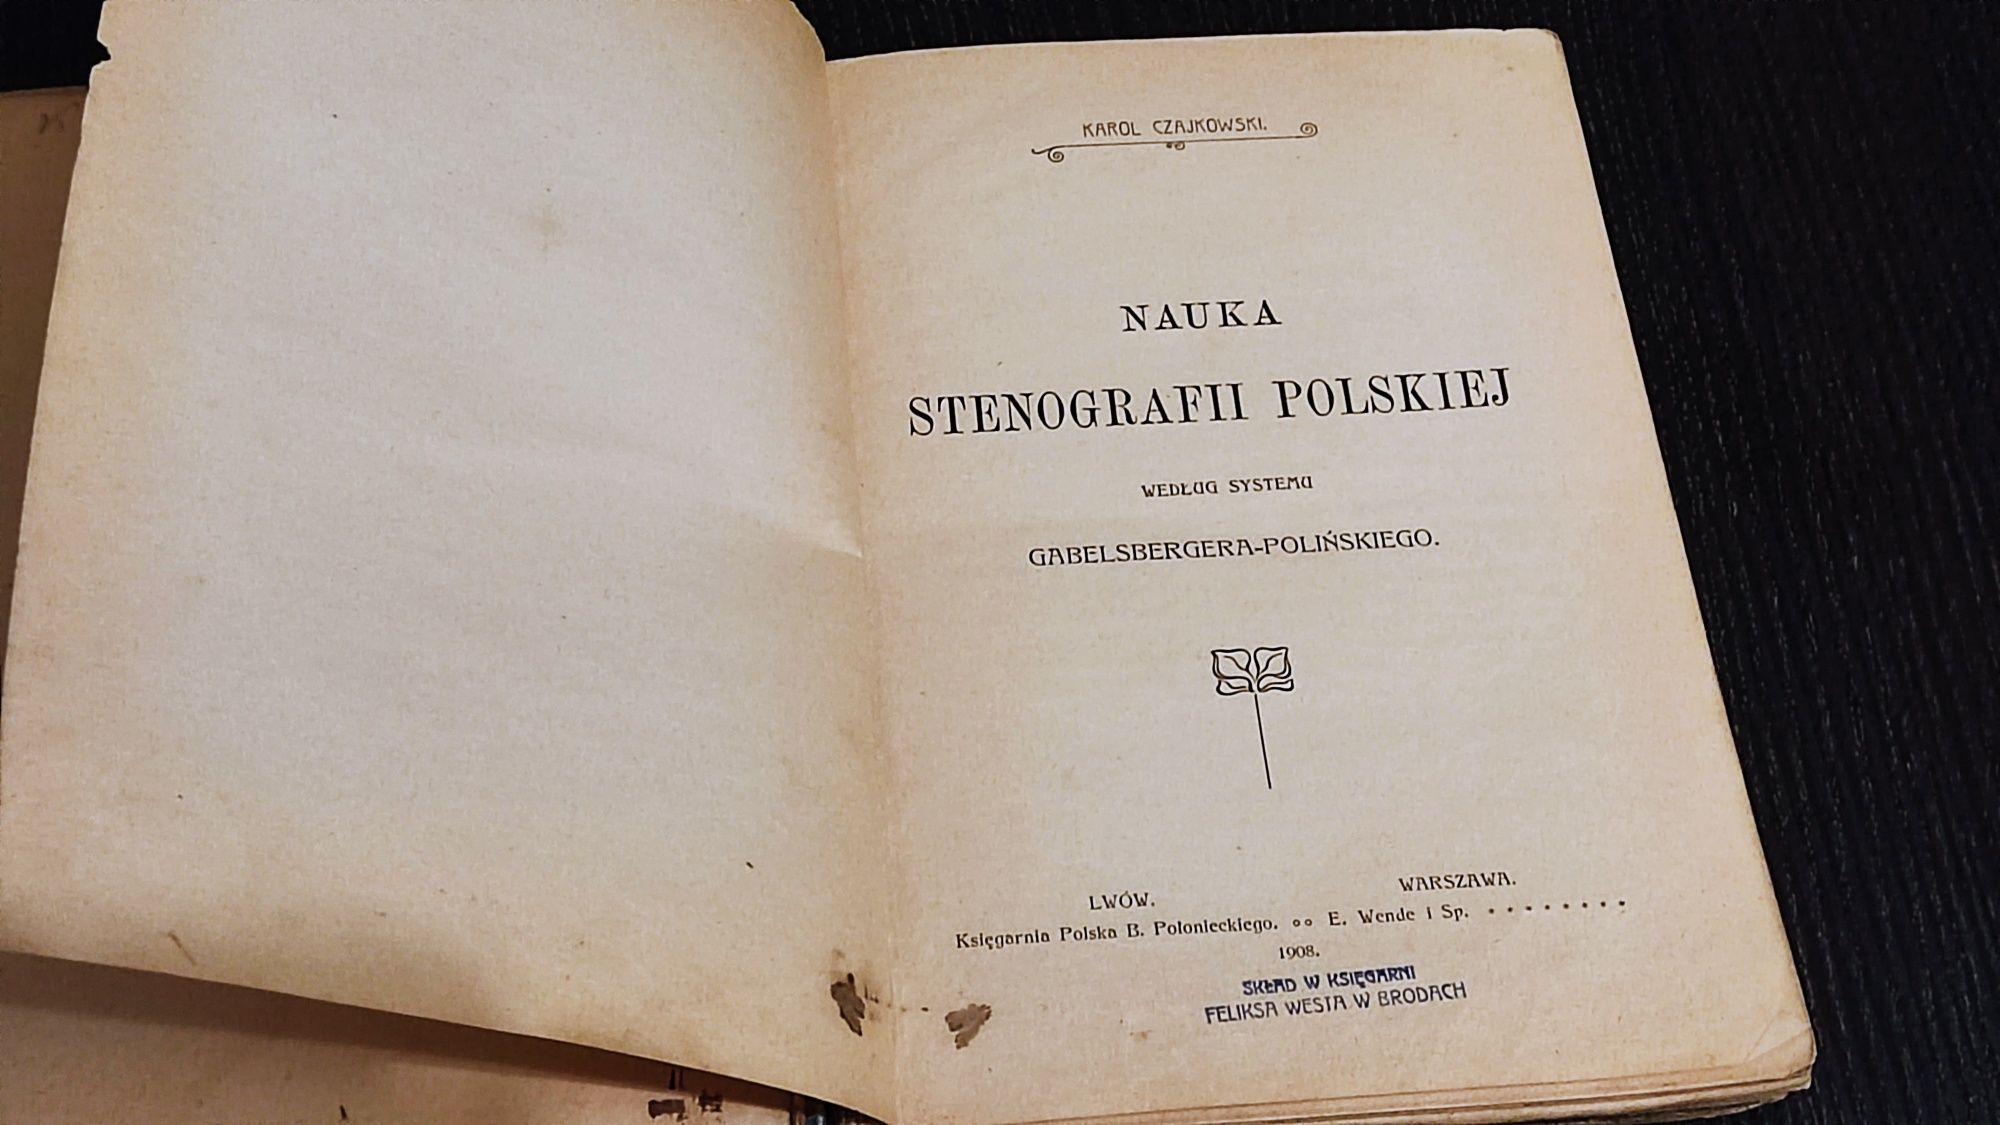 Nauka Stenografii Polskiej 1908